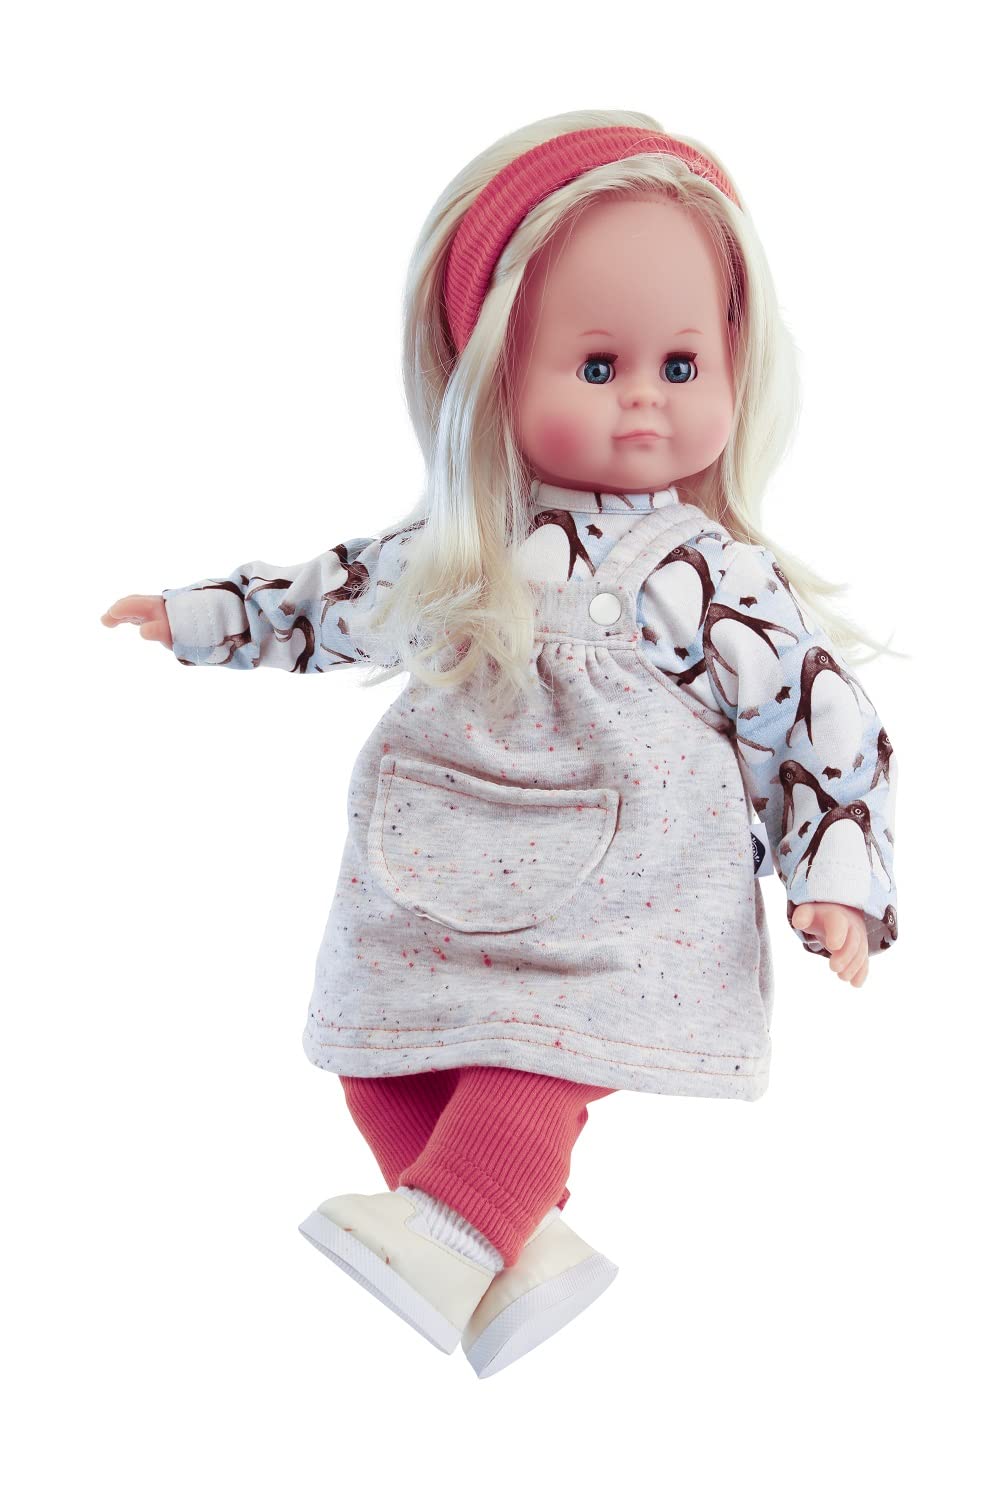 Schildkröt Puppe Schlummerle Gr. 37 cm (kämmbare Blonde Haare, Blaue Schlafaugen, Baby Puppe inkl. Kleidung) 2037158